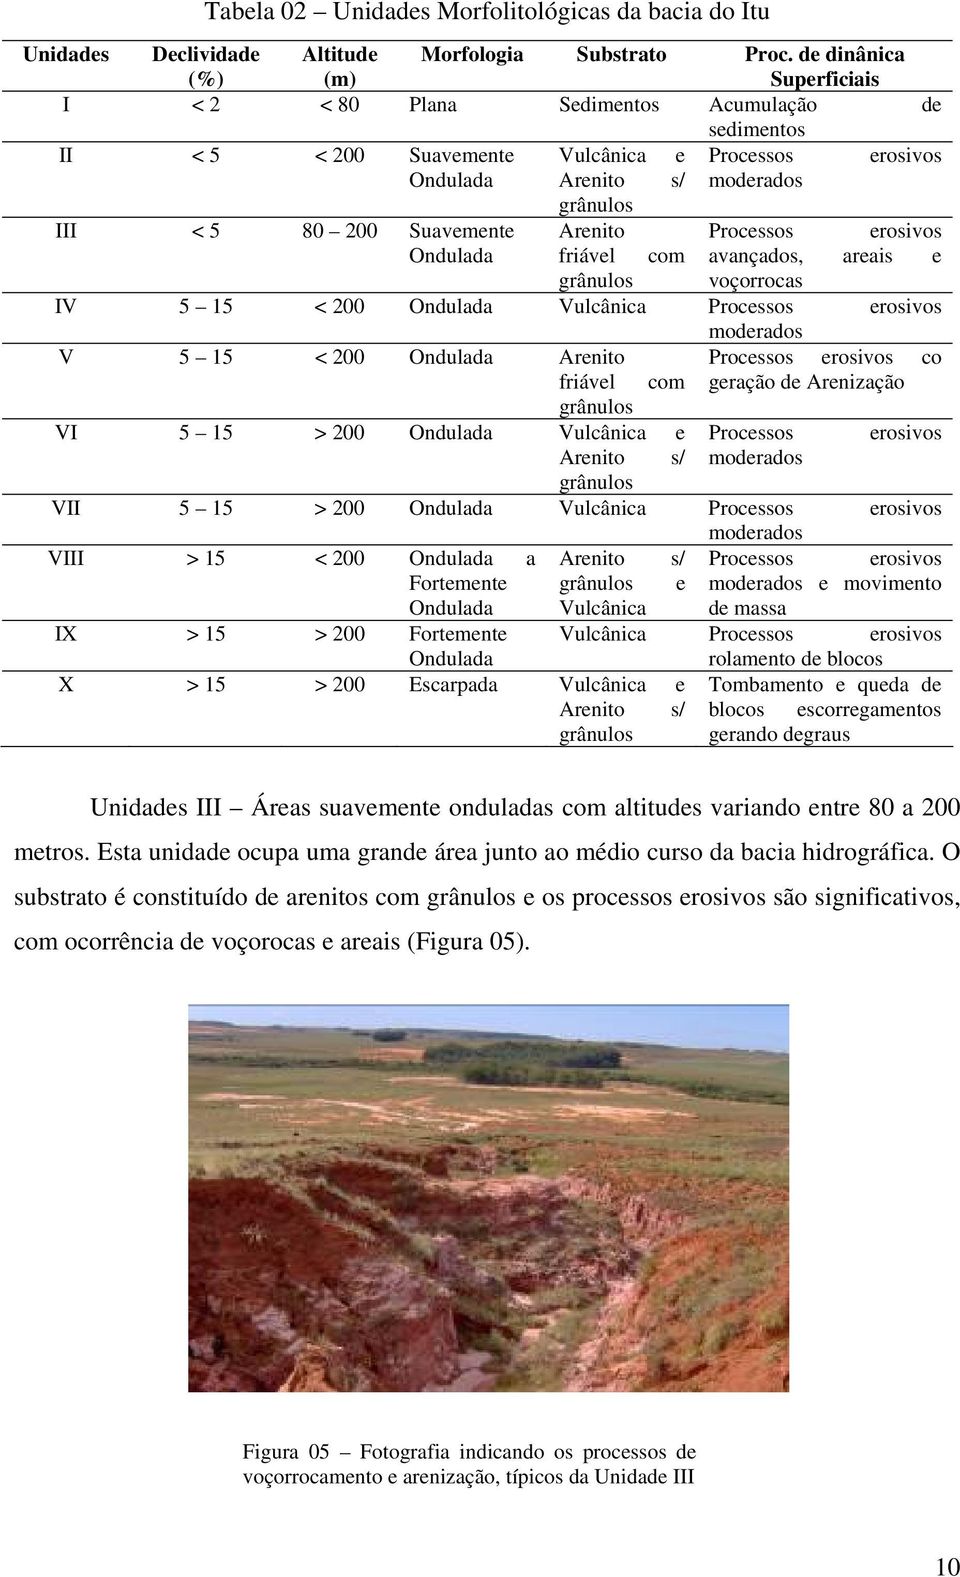 Arenito Processos erosivos Ondulada friável com avançados, areais e grânulos voçorrocas IV 5 15 < 200 Ondulada Vulcânica Processos erosivos moderados V 5 15 < 200 Ondulada Arenito Processos erosivos